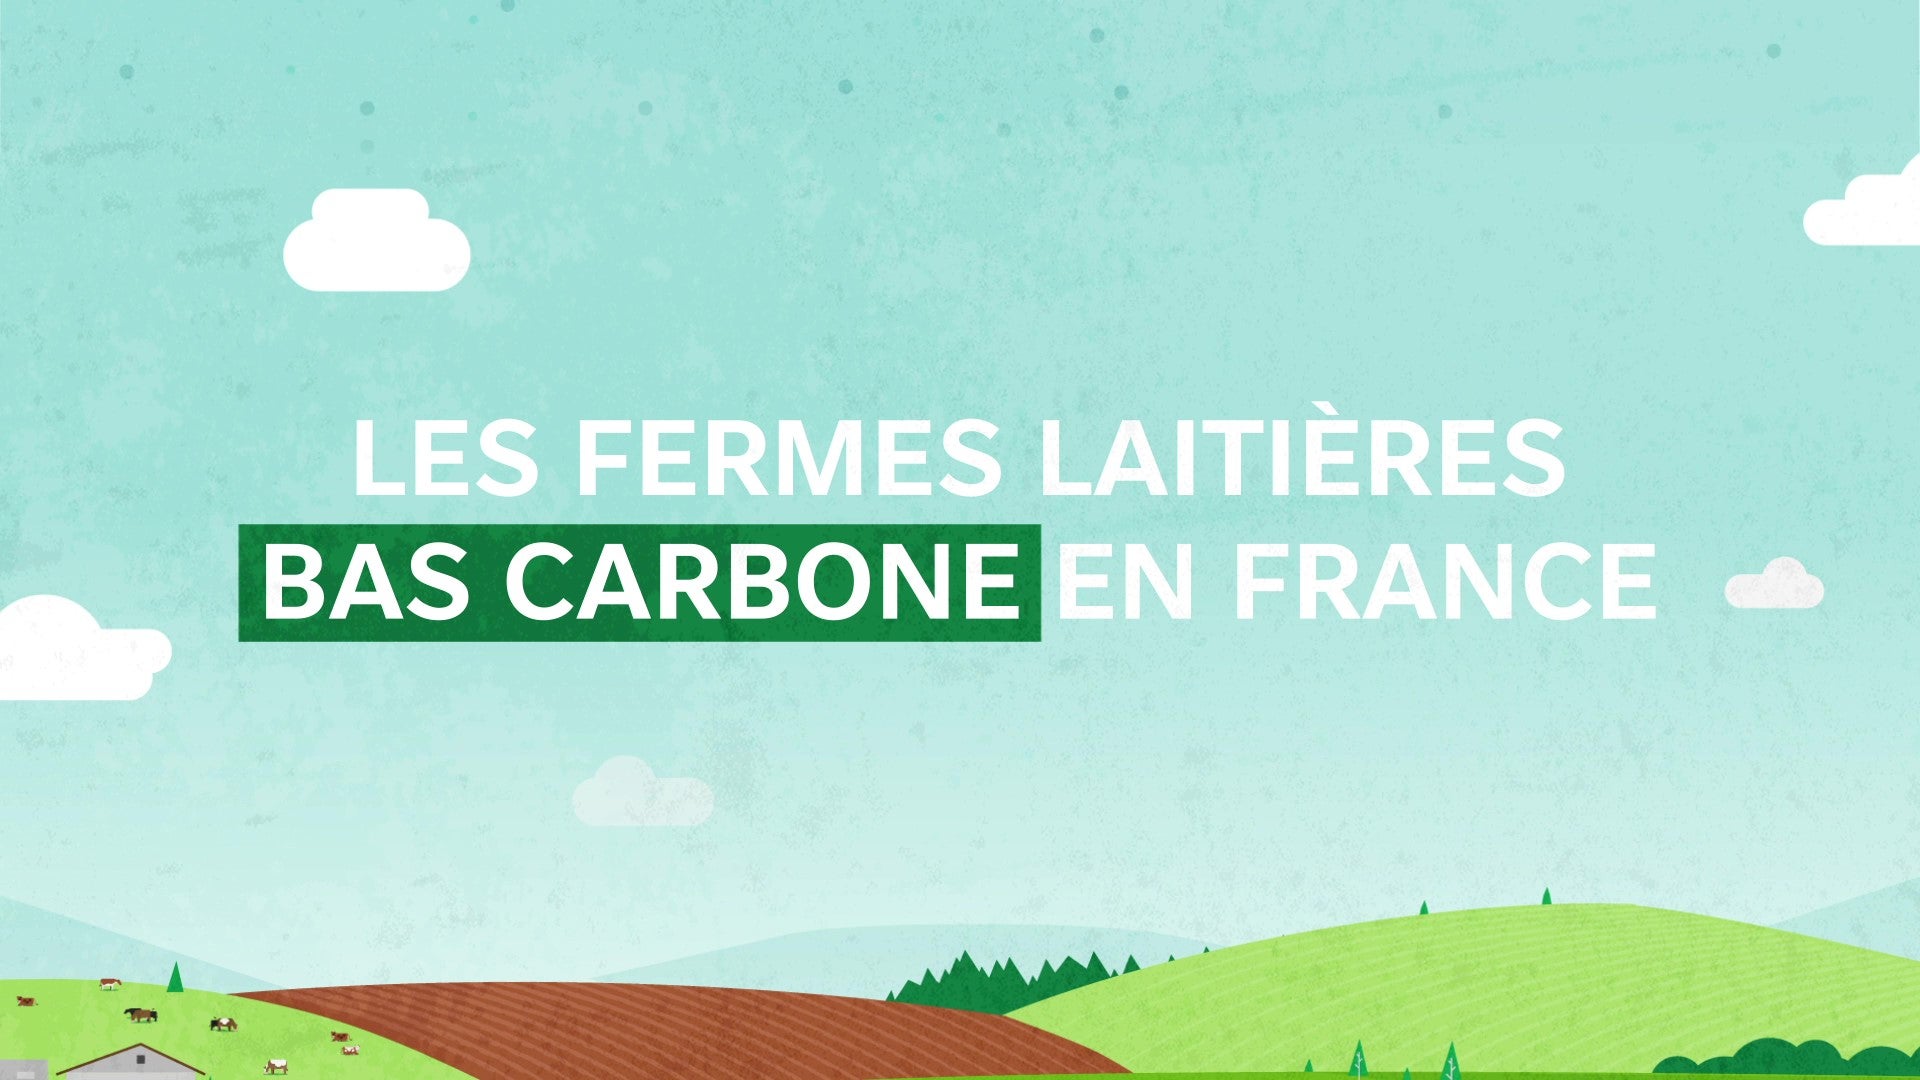 Fermes laitières bas carbone Nestlé France